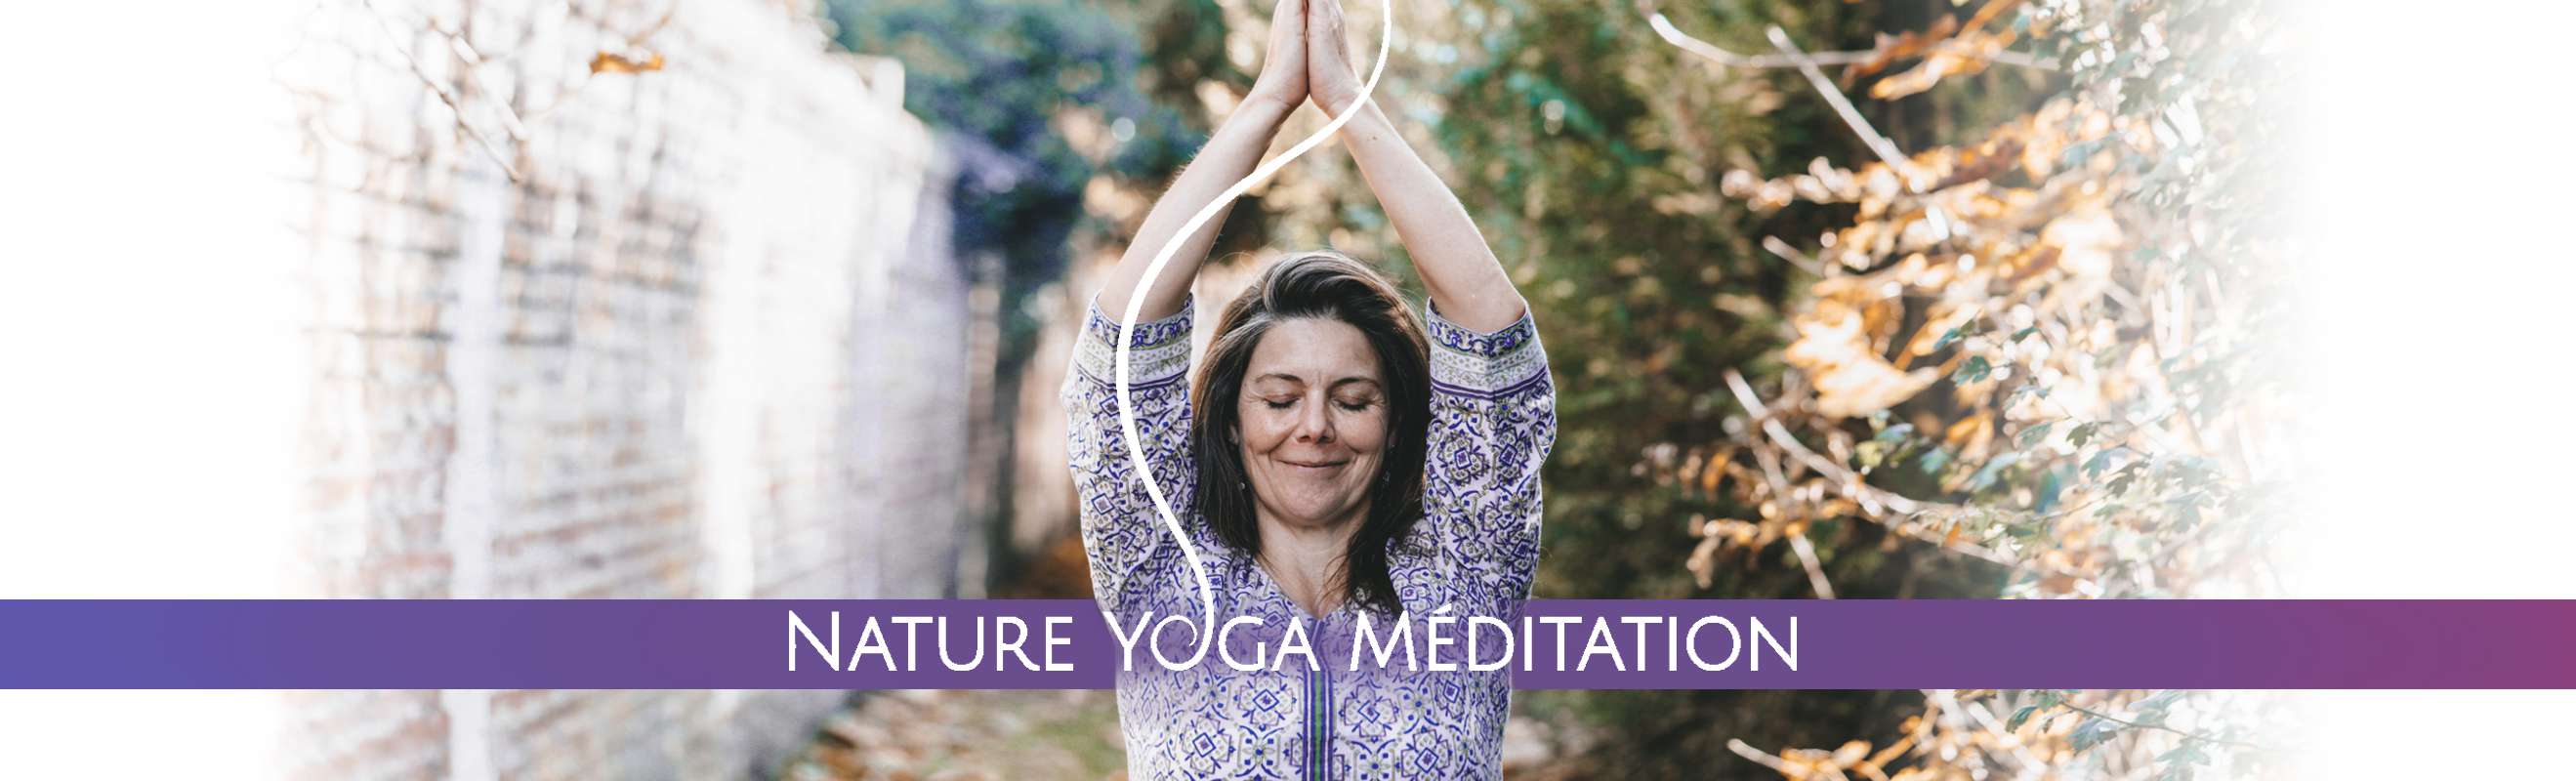 Nature Yoga Méditation (NYM) est une école de Yoga dont la professeure est Céline Reynaud. Elle enseigne à Lille (59000).